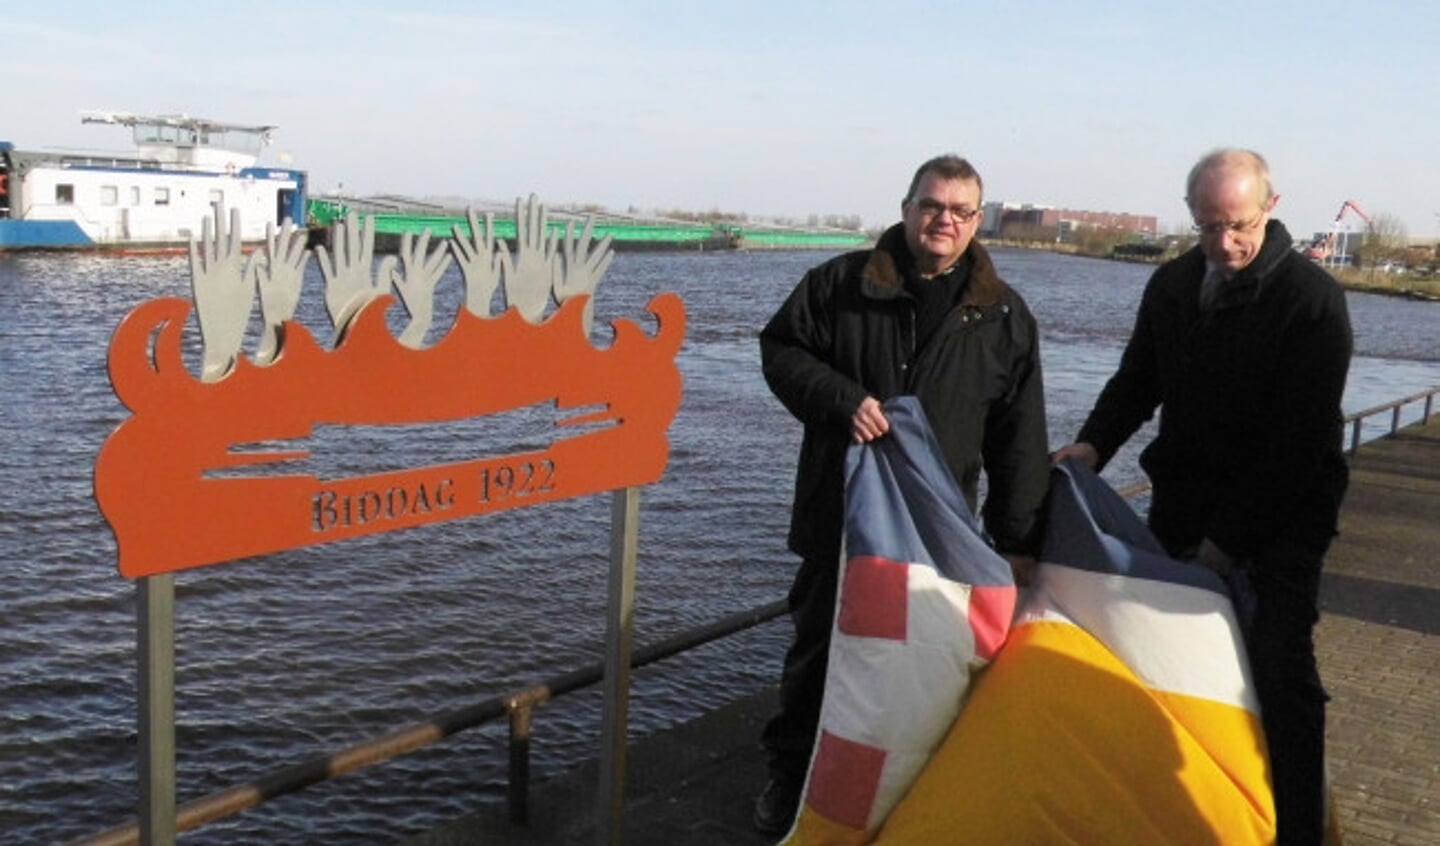  Sijm van Lente en wethouder Speksnijder onthulden het monument